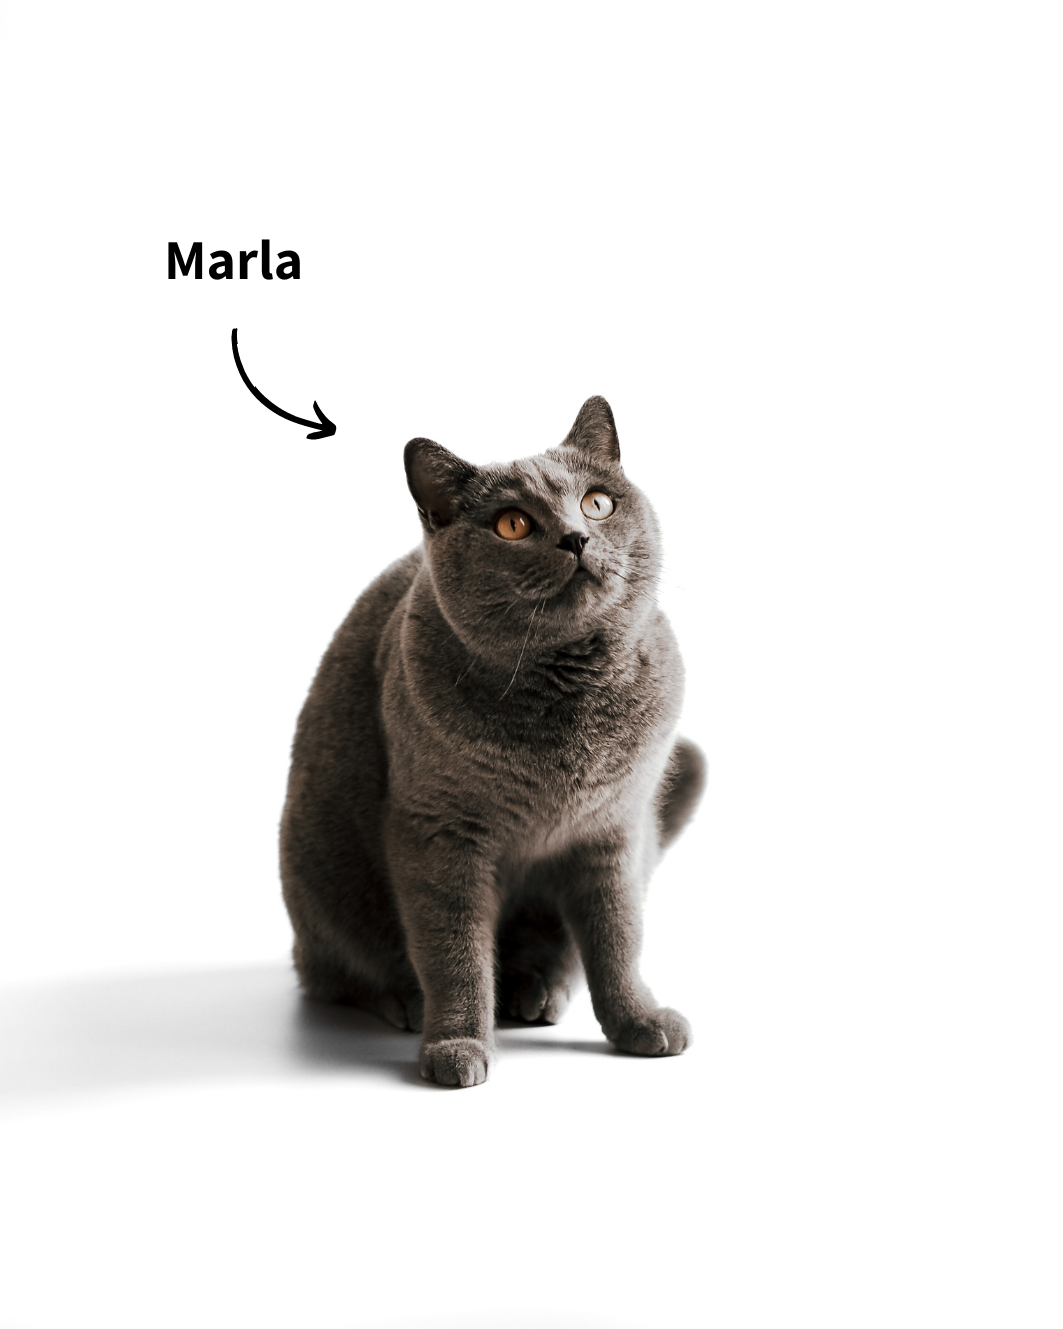 BKH Katze Marla, ein Teil des Markennamens "Minty & Marla - Alles für dich und deine Katze"